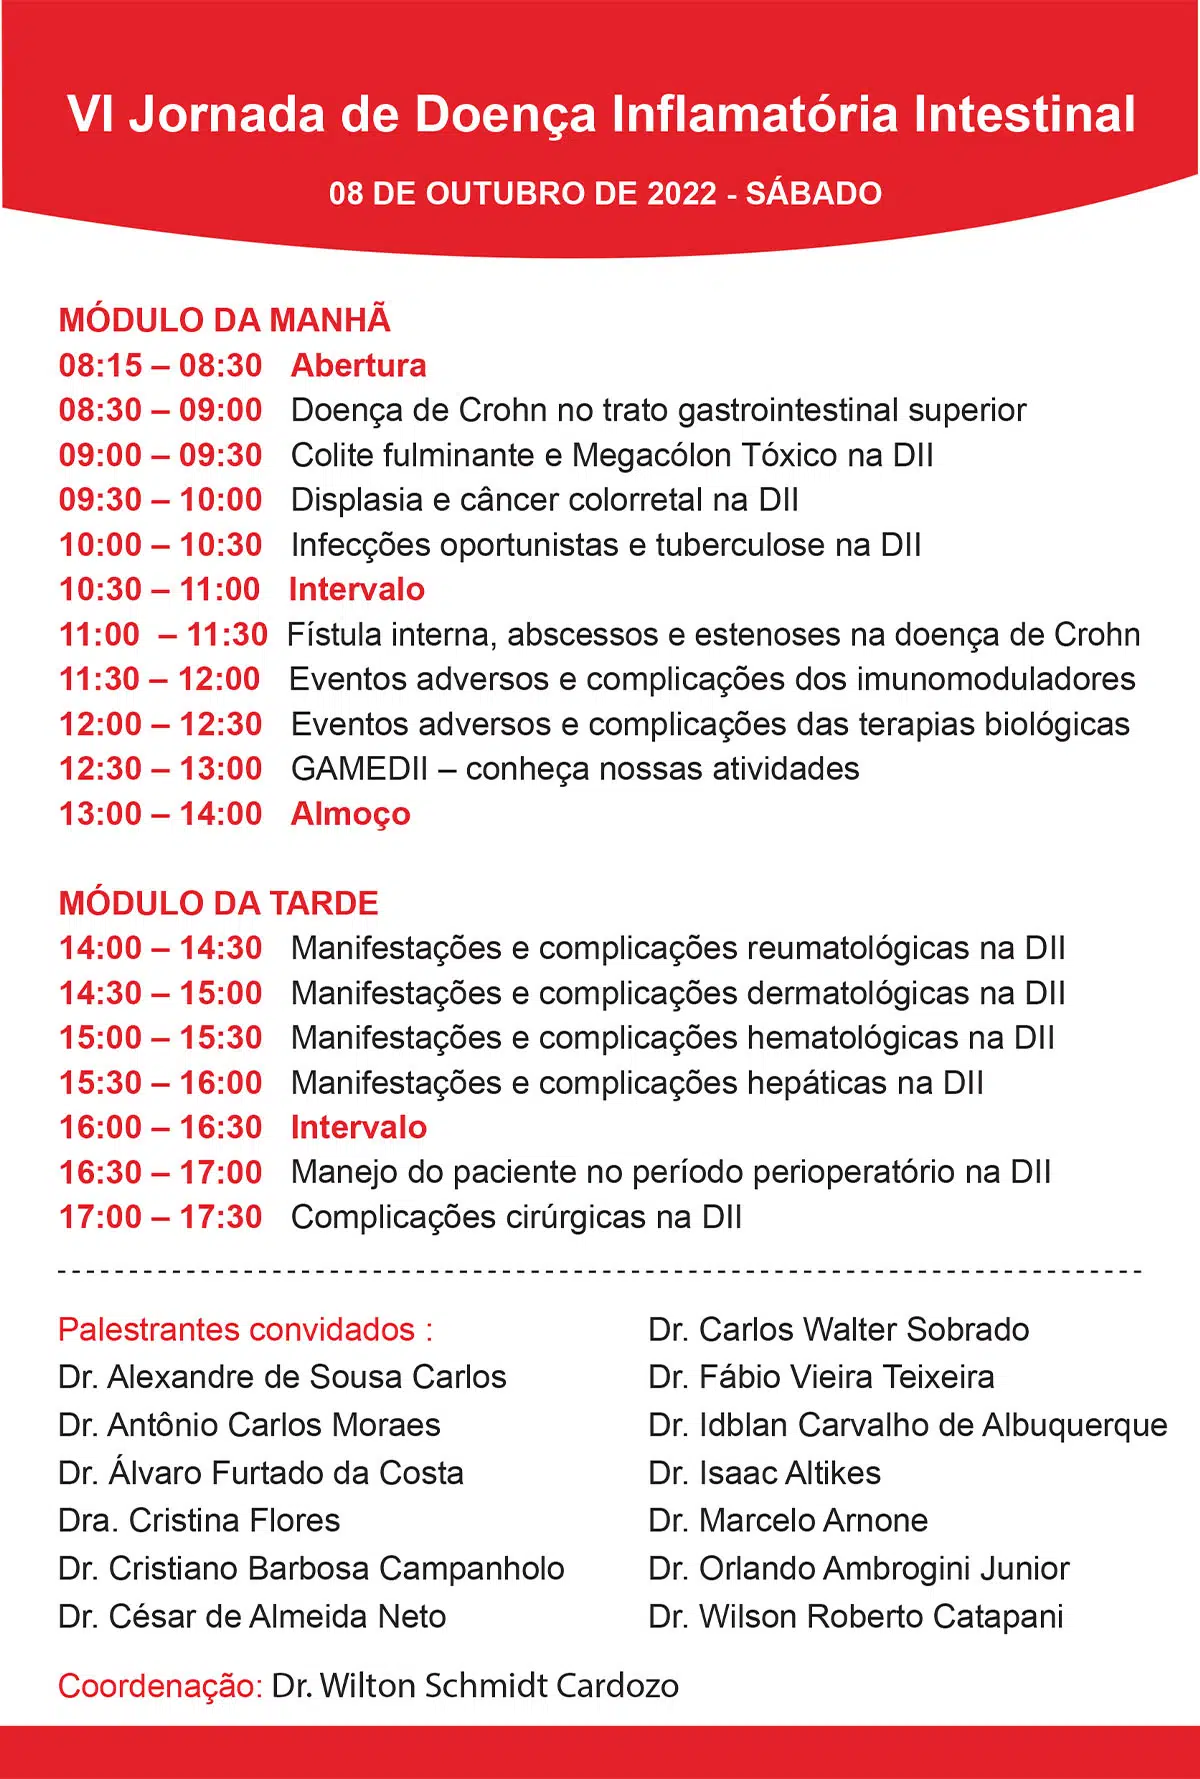 VI Jornada de Doença Inflamatória Intestinal de Guarulhos 